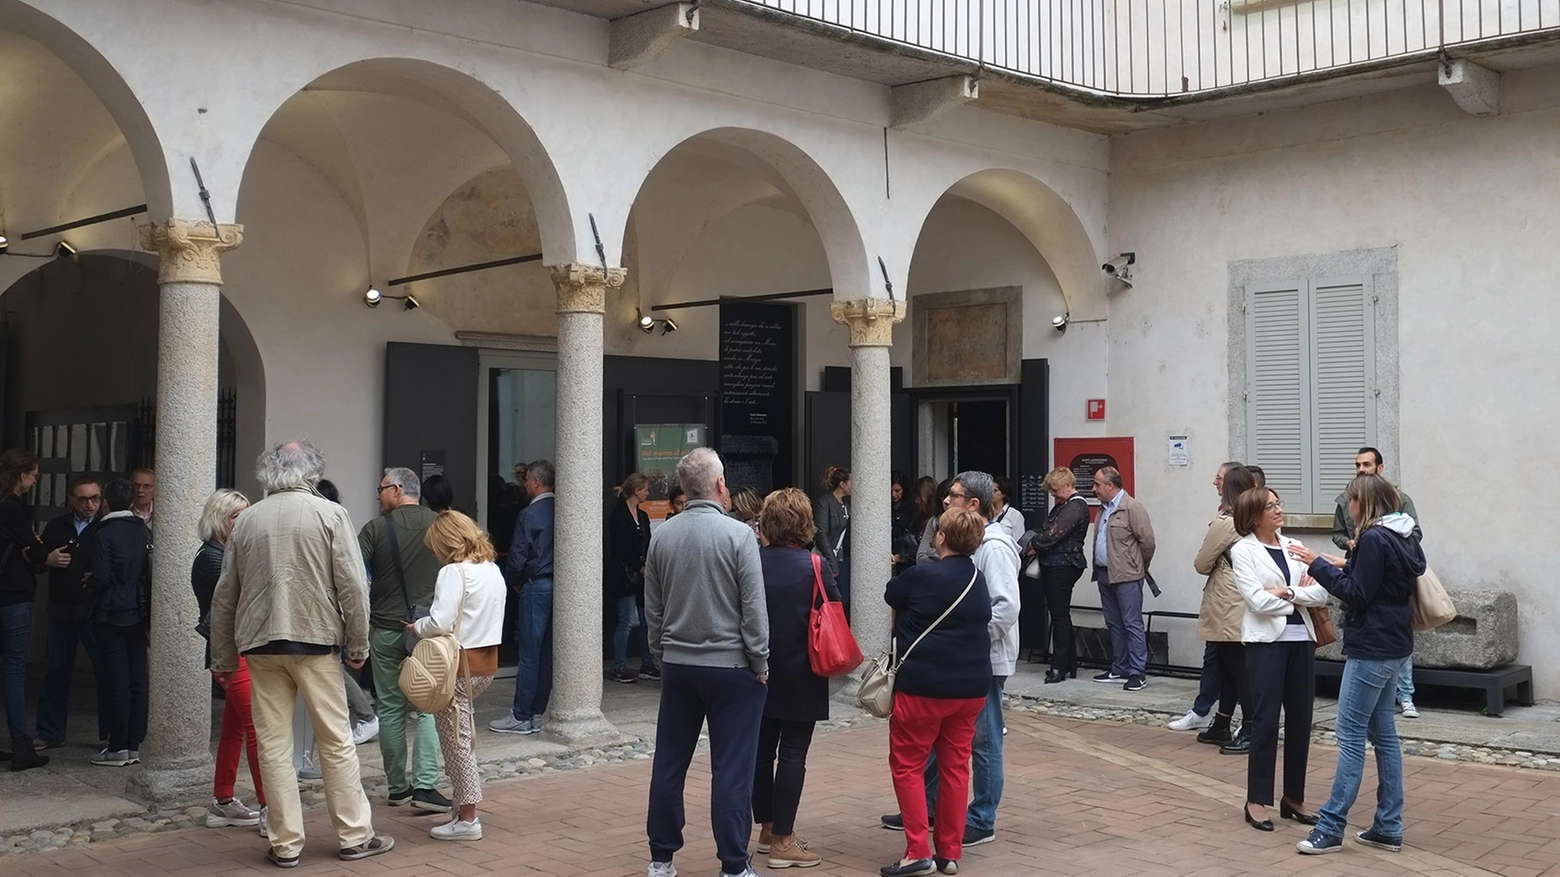 L’appuntamento, organizzato dall’associazione Mazziniana italiana, è per domenica 17 marzo alle 16. Partenza da piazza Trento e Trieste